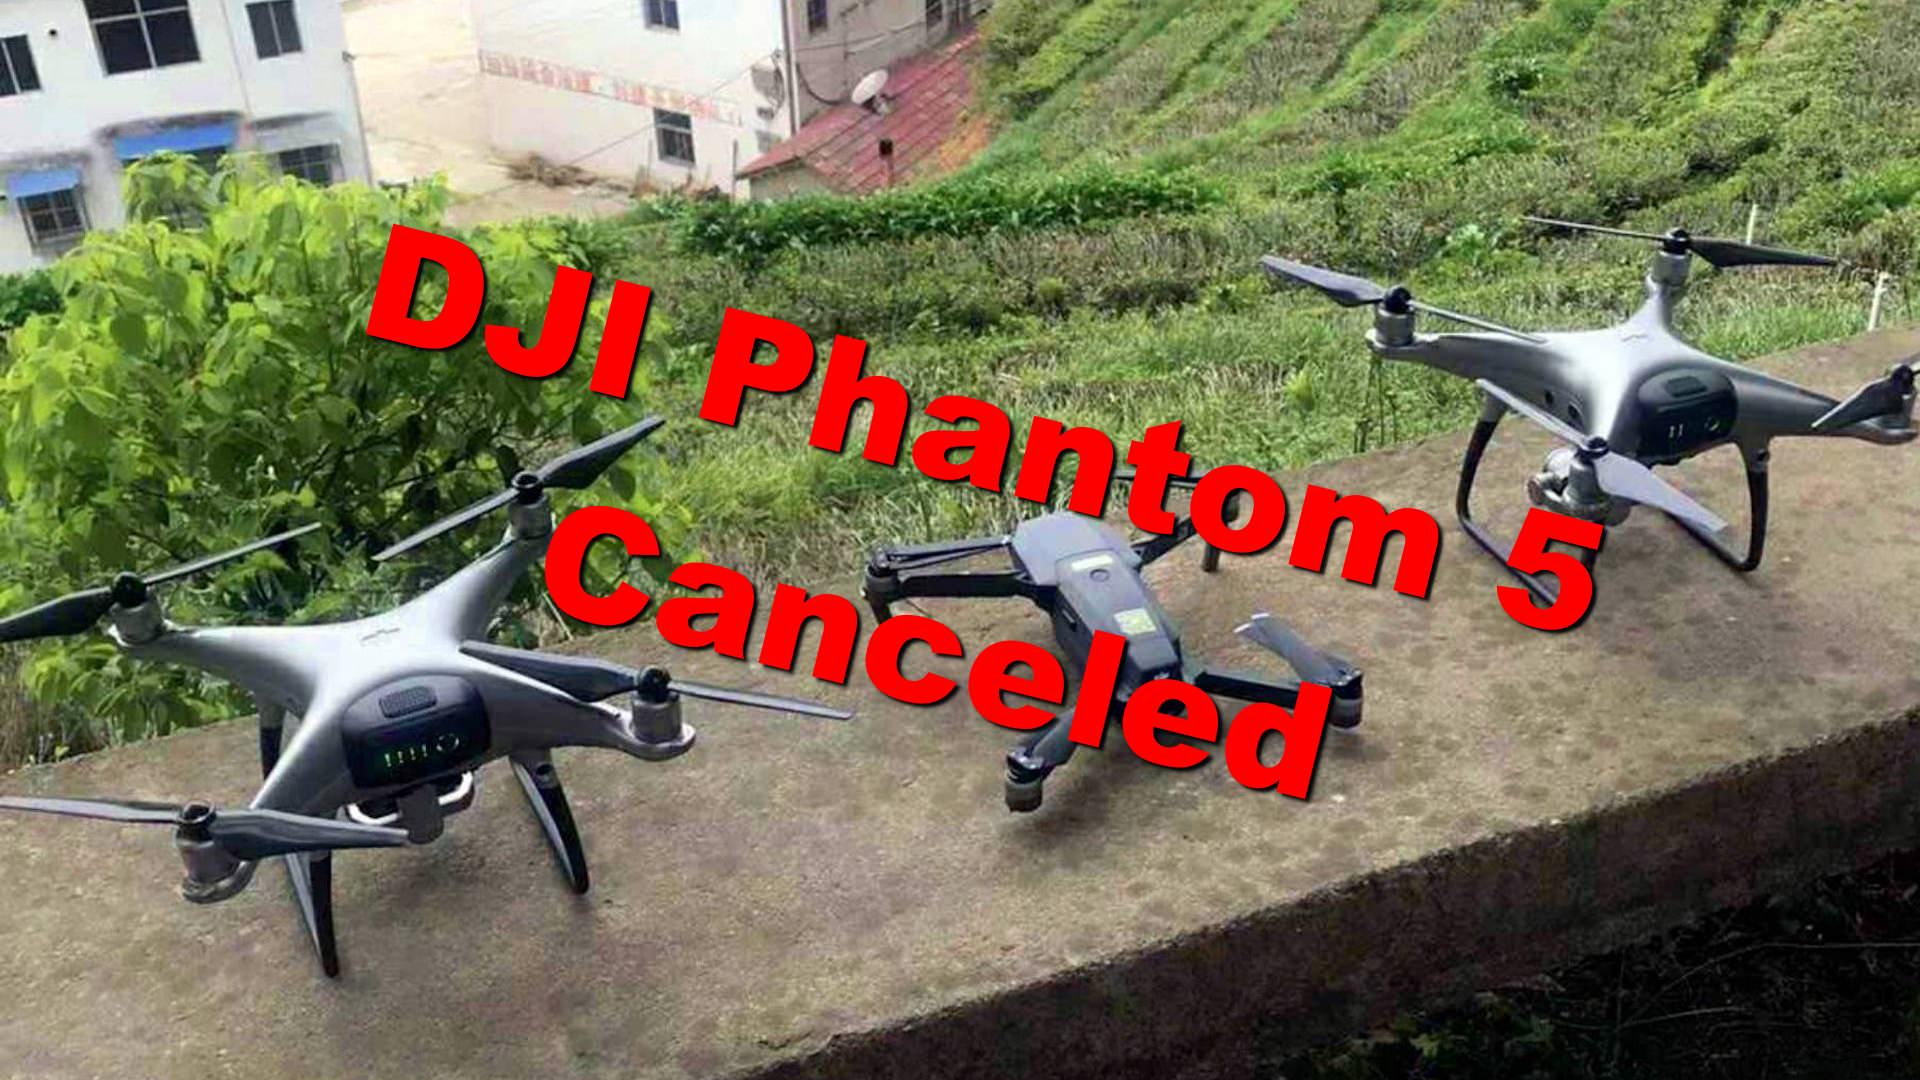 phantom 5 drone price